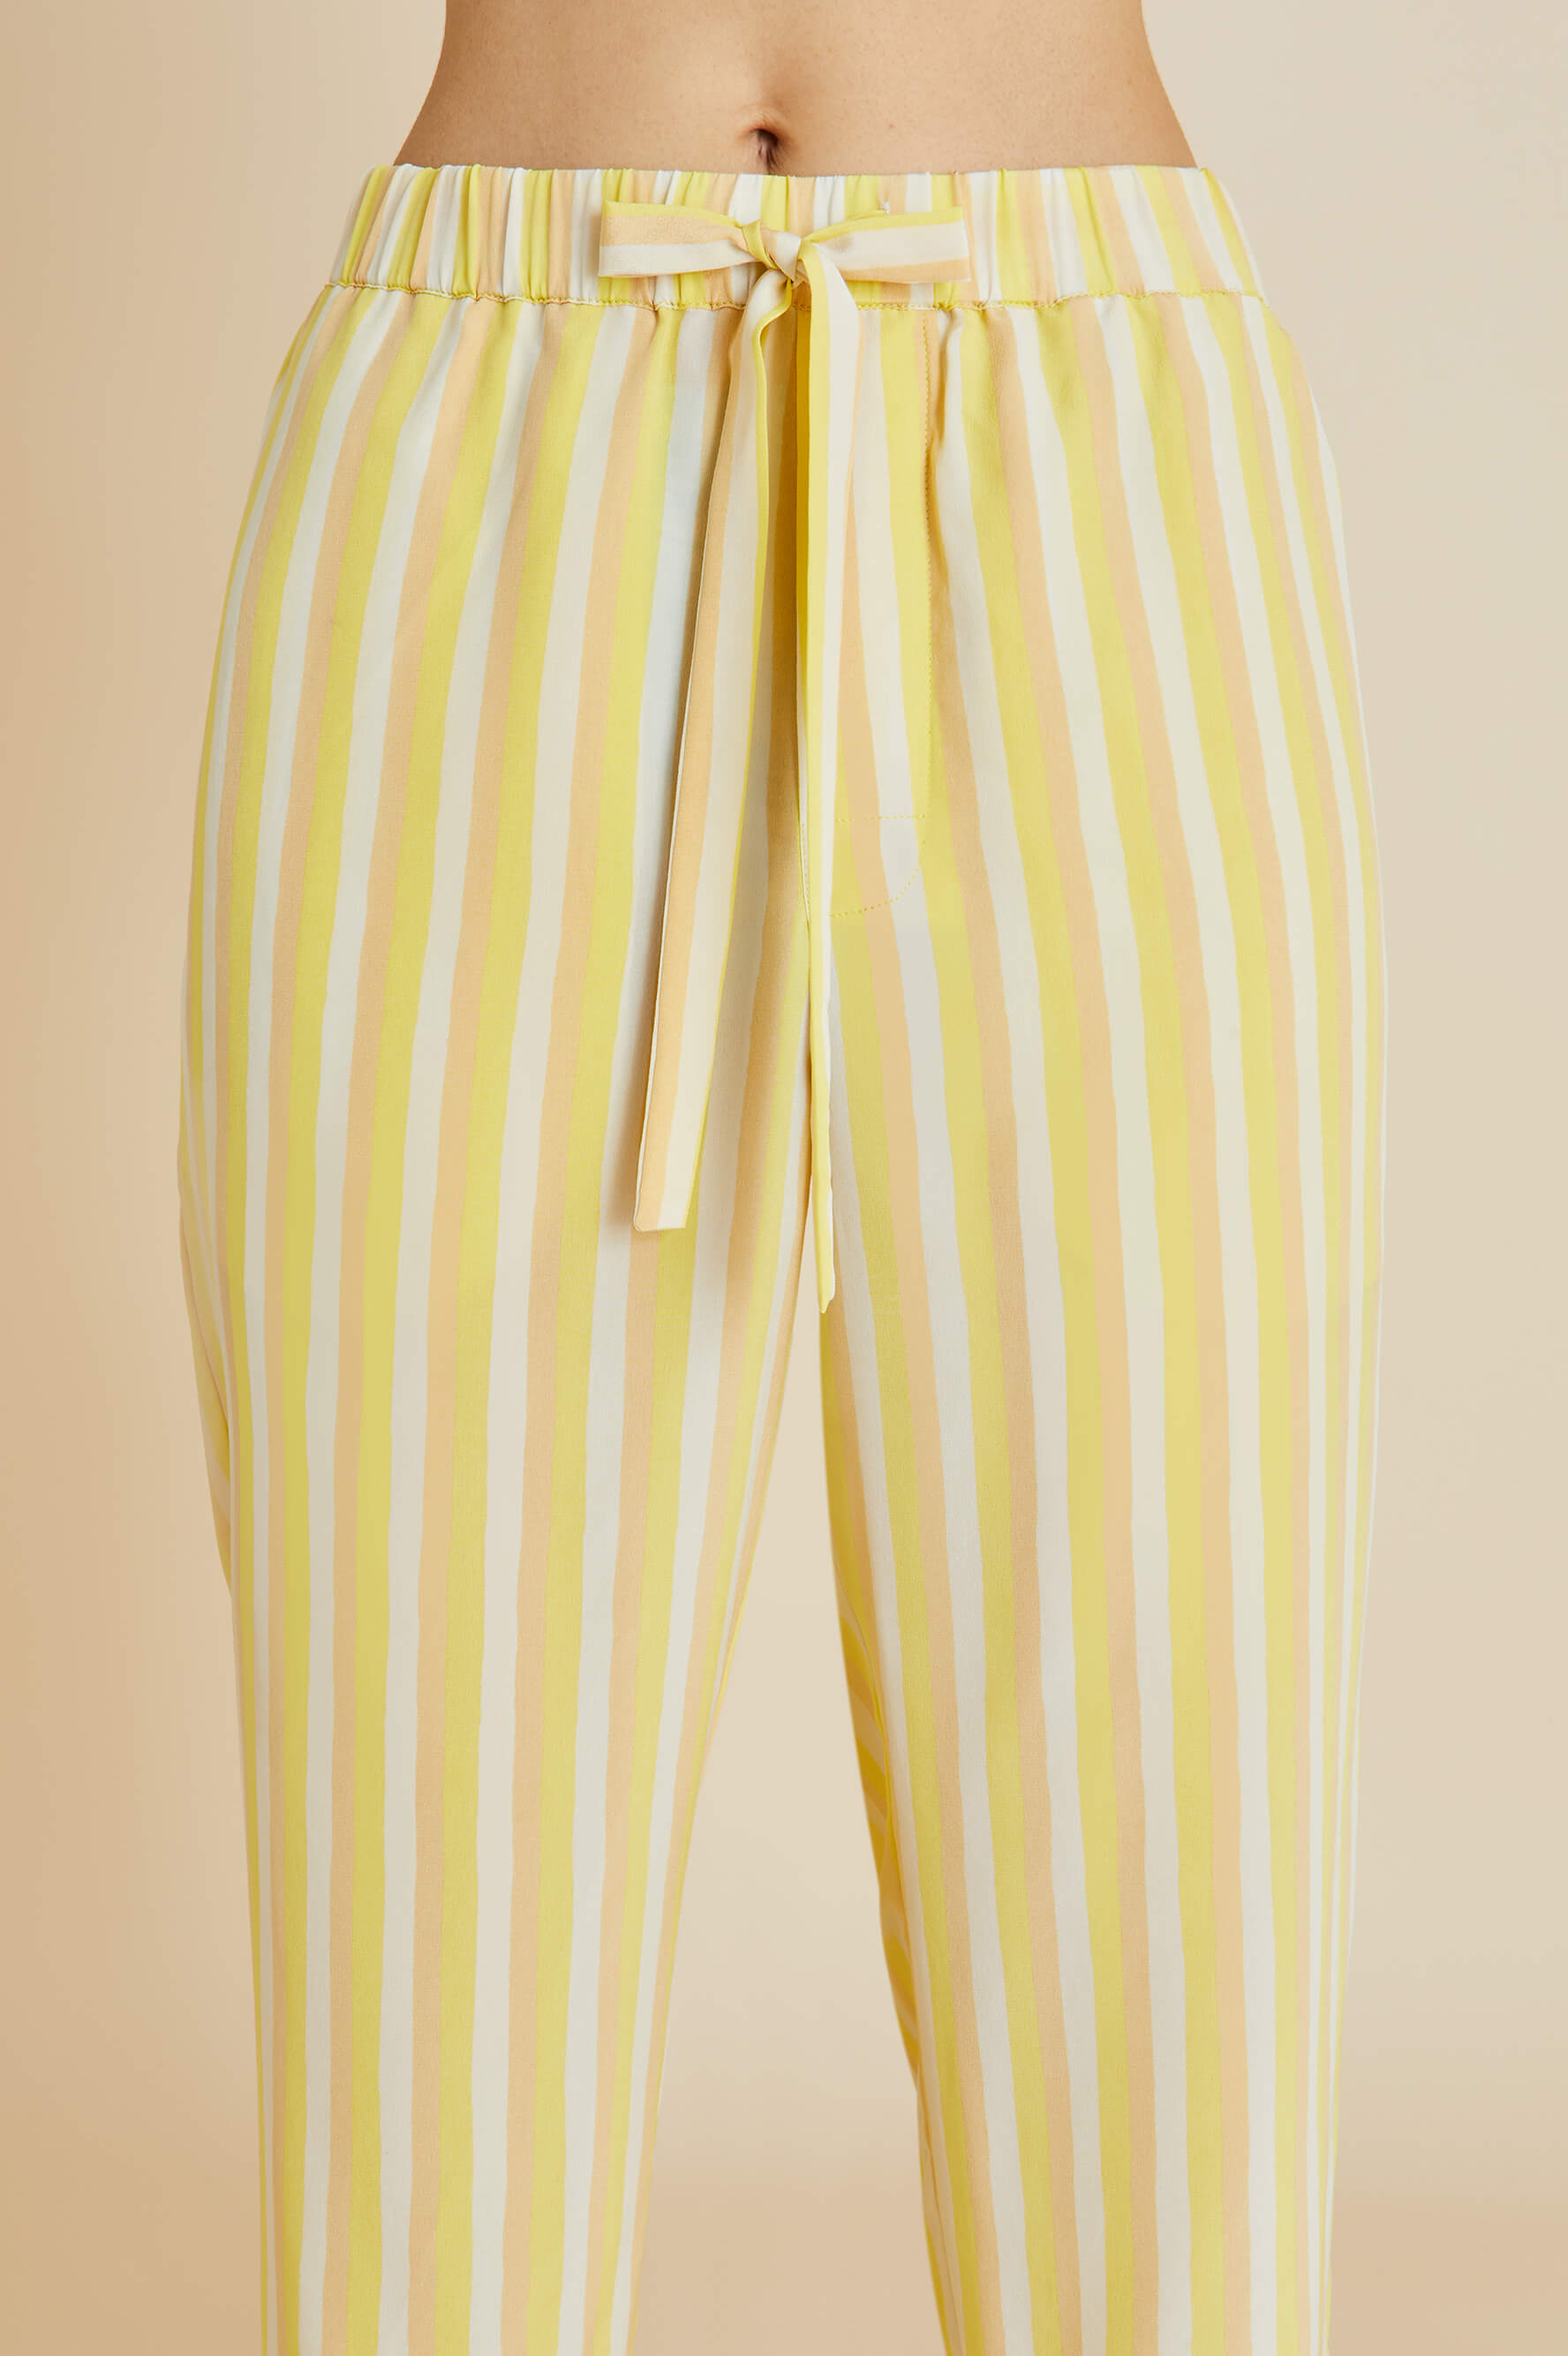 Casablanca Polaris Yellow Stripe Pajamas in Silk Crêpe de Chine